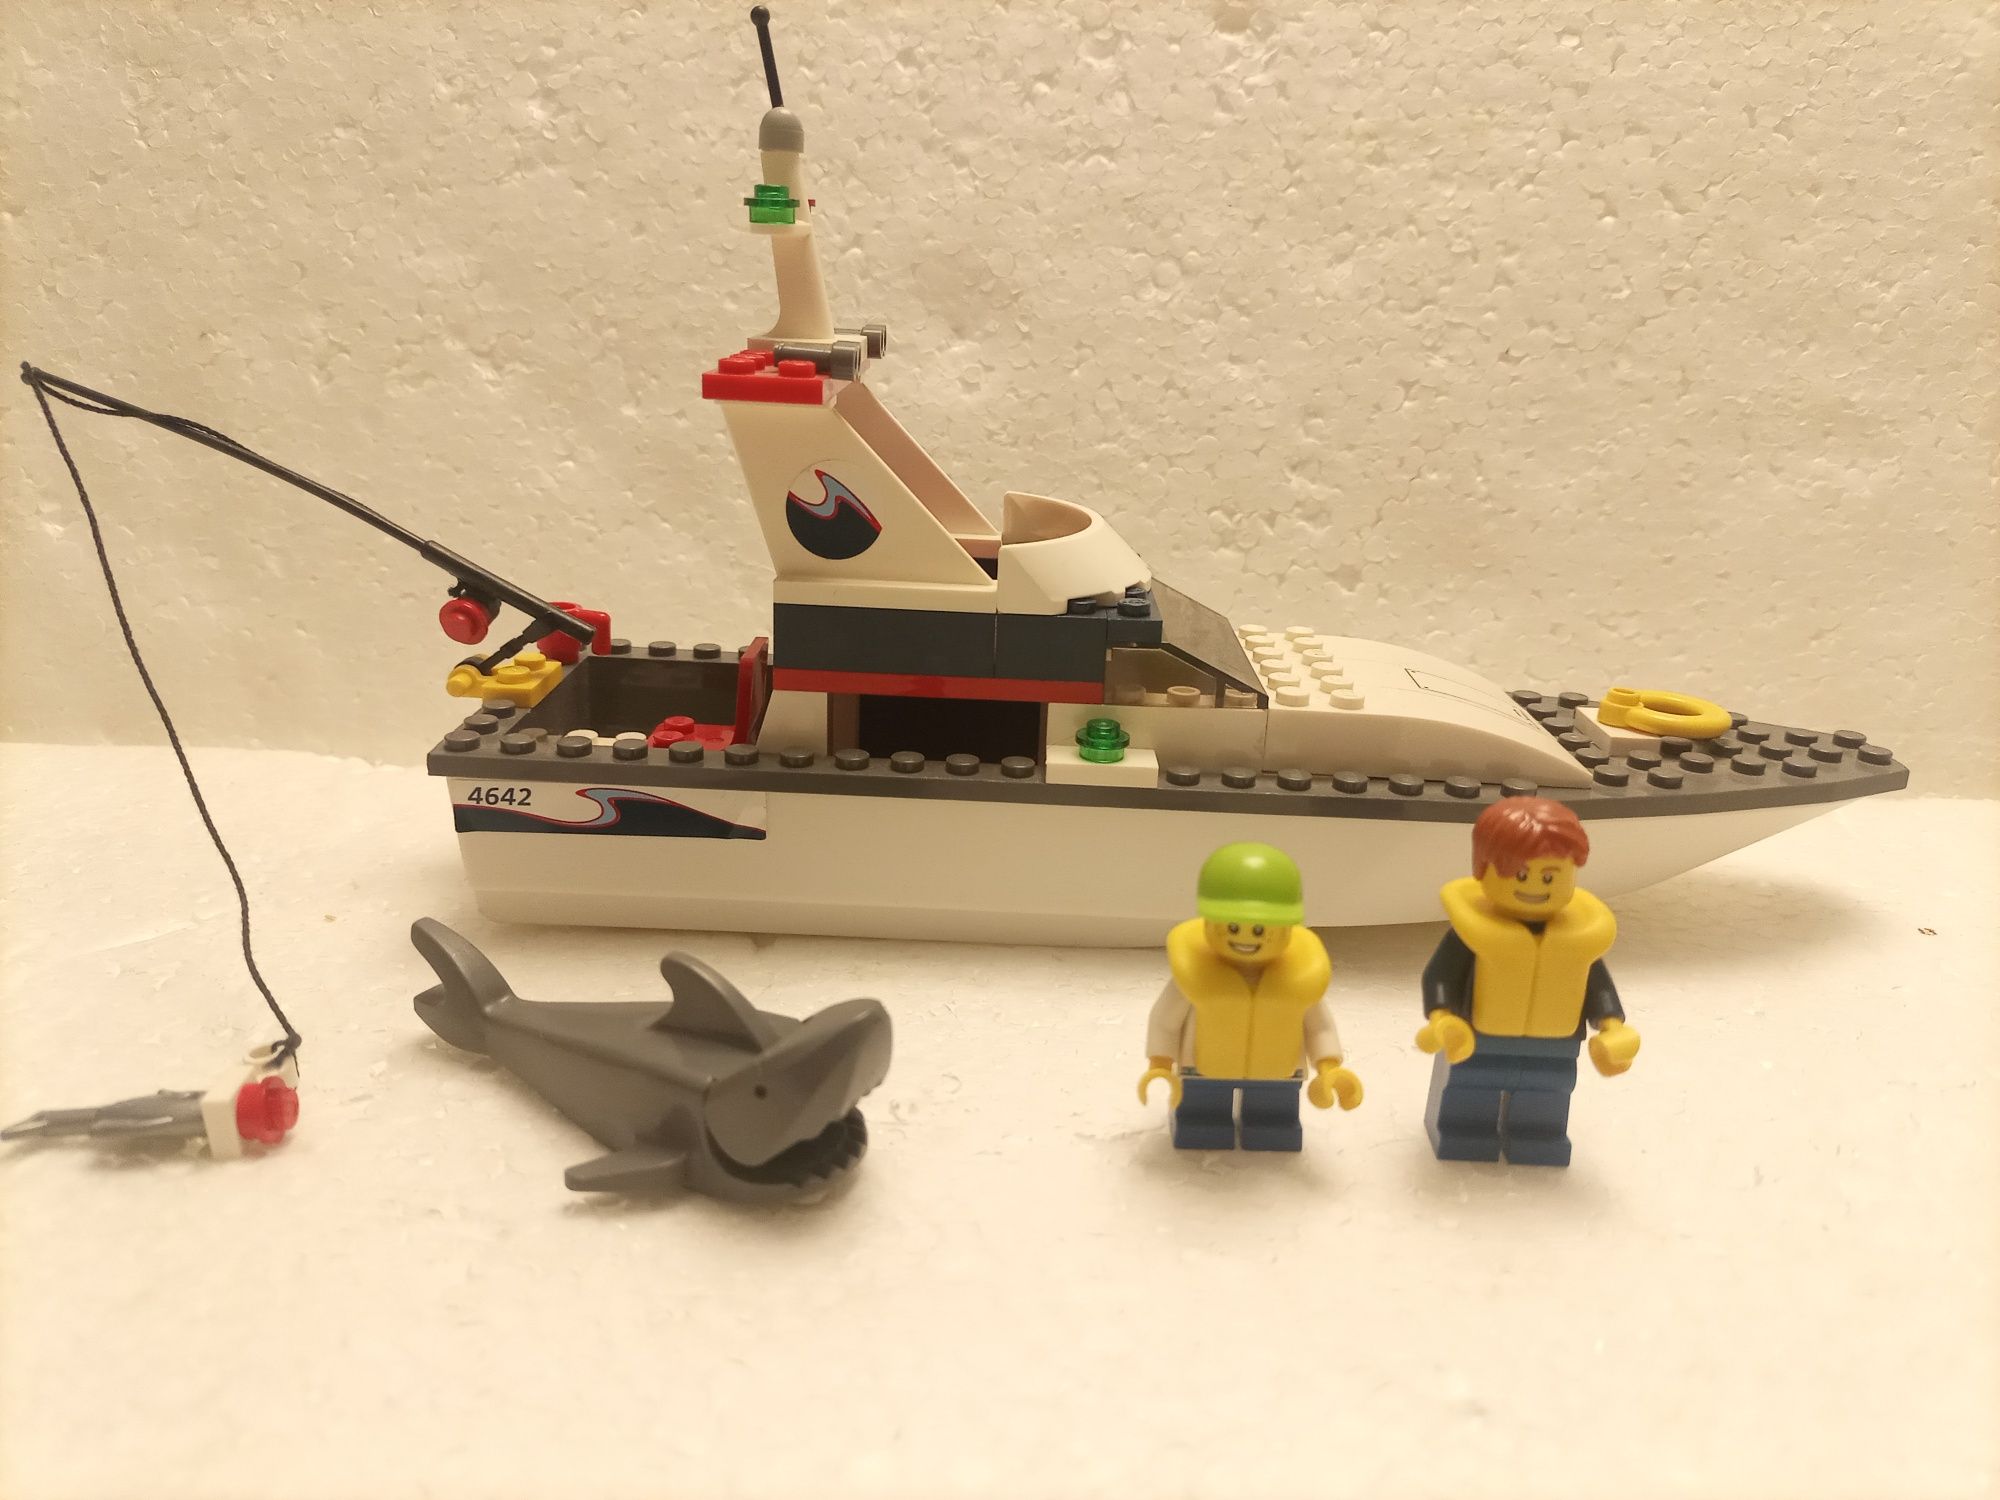 Klocki LEGO 4642 połów ryb jacht